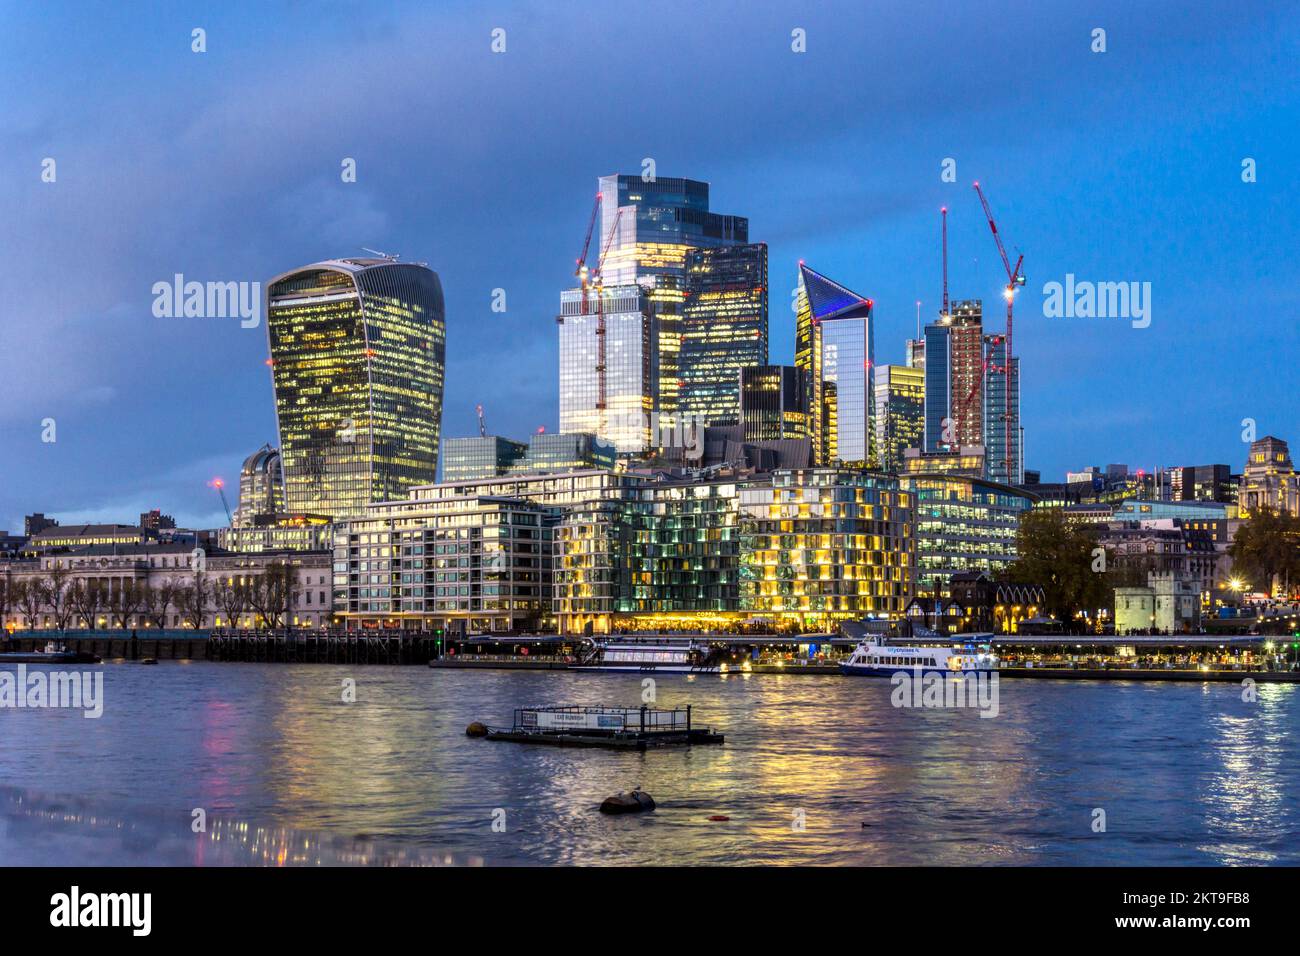 Il denso sviluppo commerciale dello skyline della City of London visto attraverso il Tamigi al crepuscolo. Foto Stock